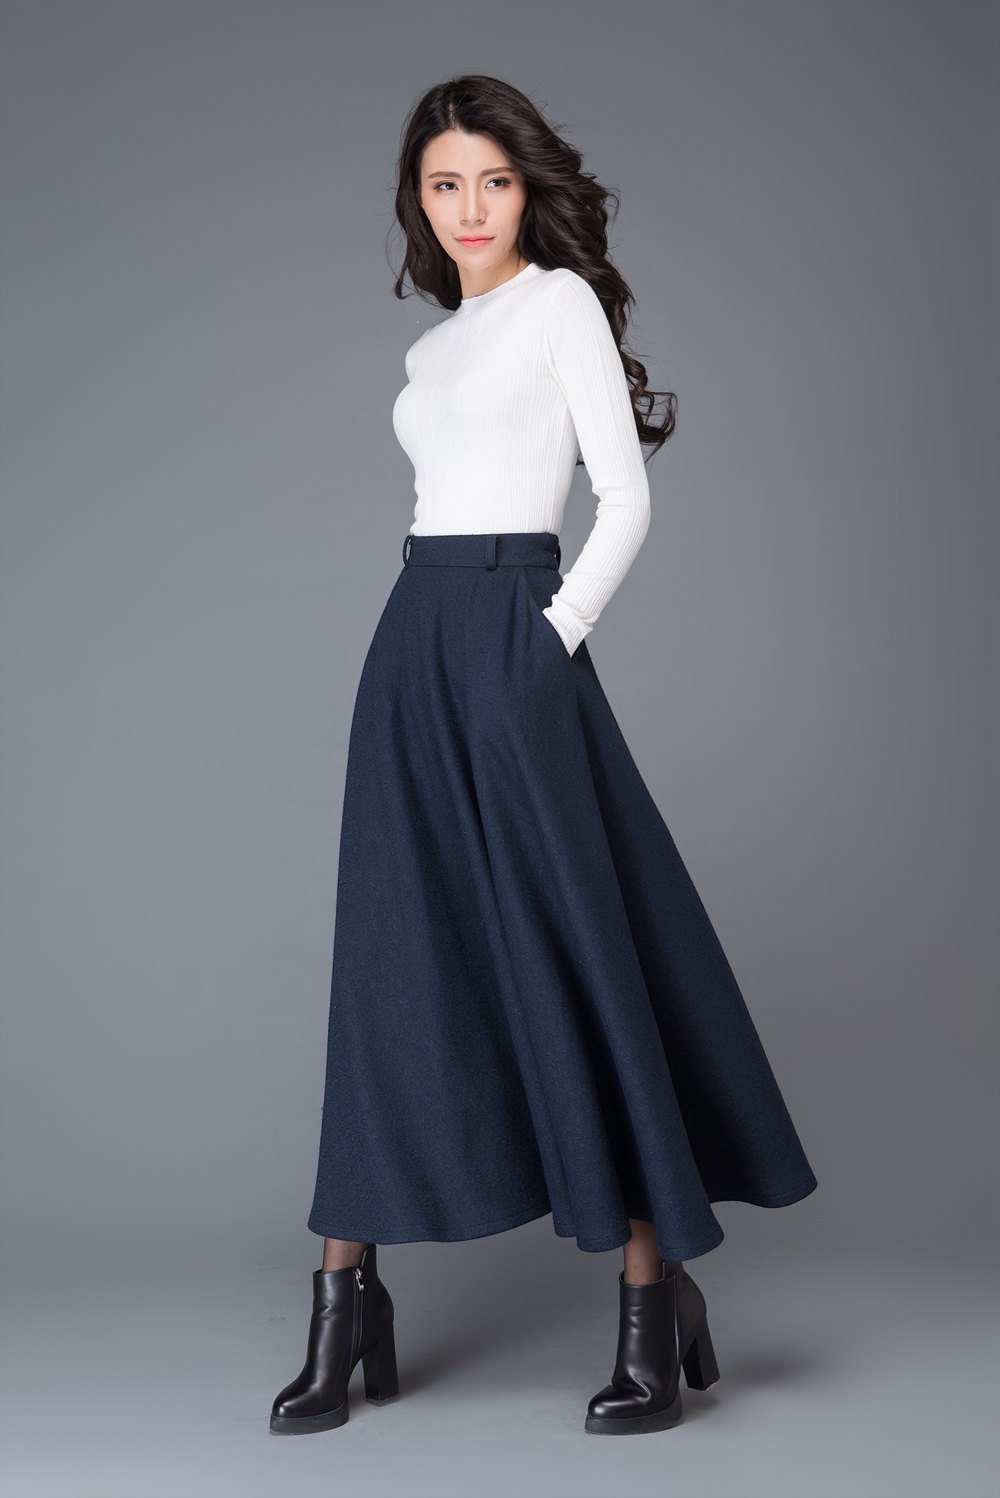 high waist A line wool maxi skirt C1006